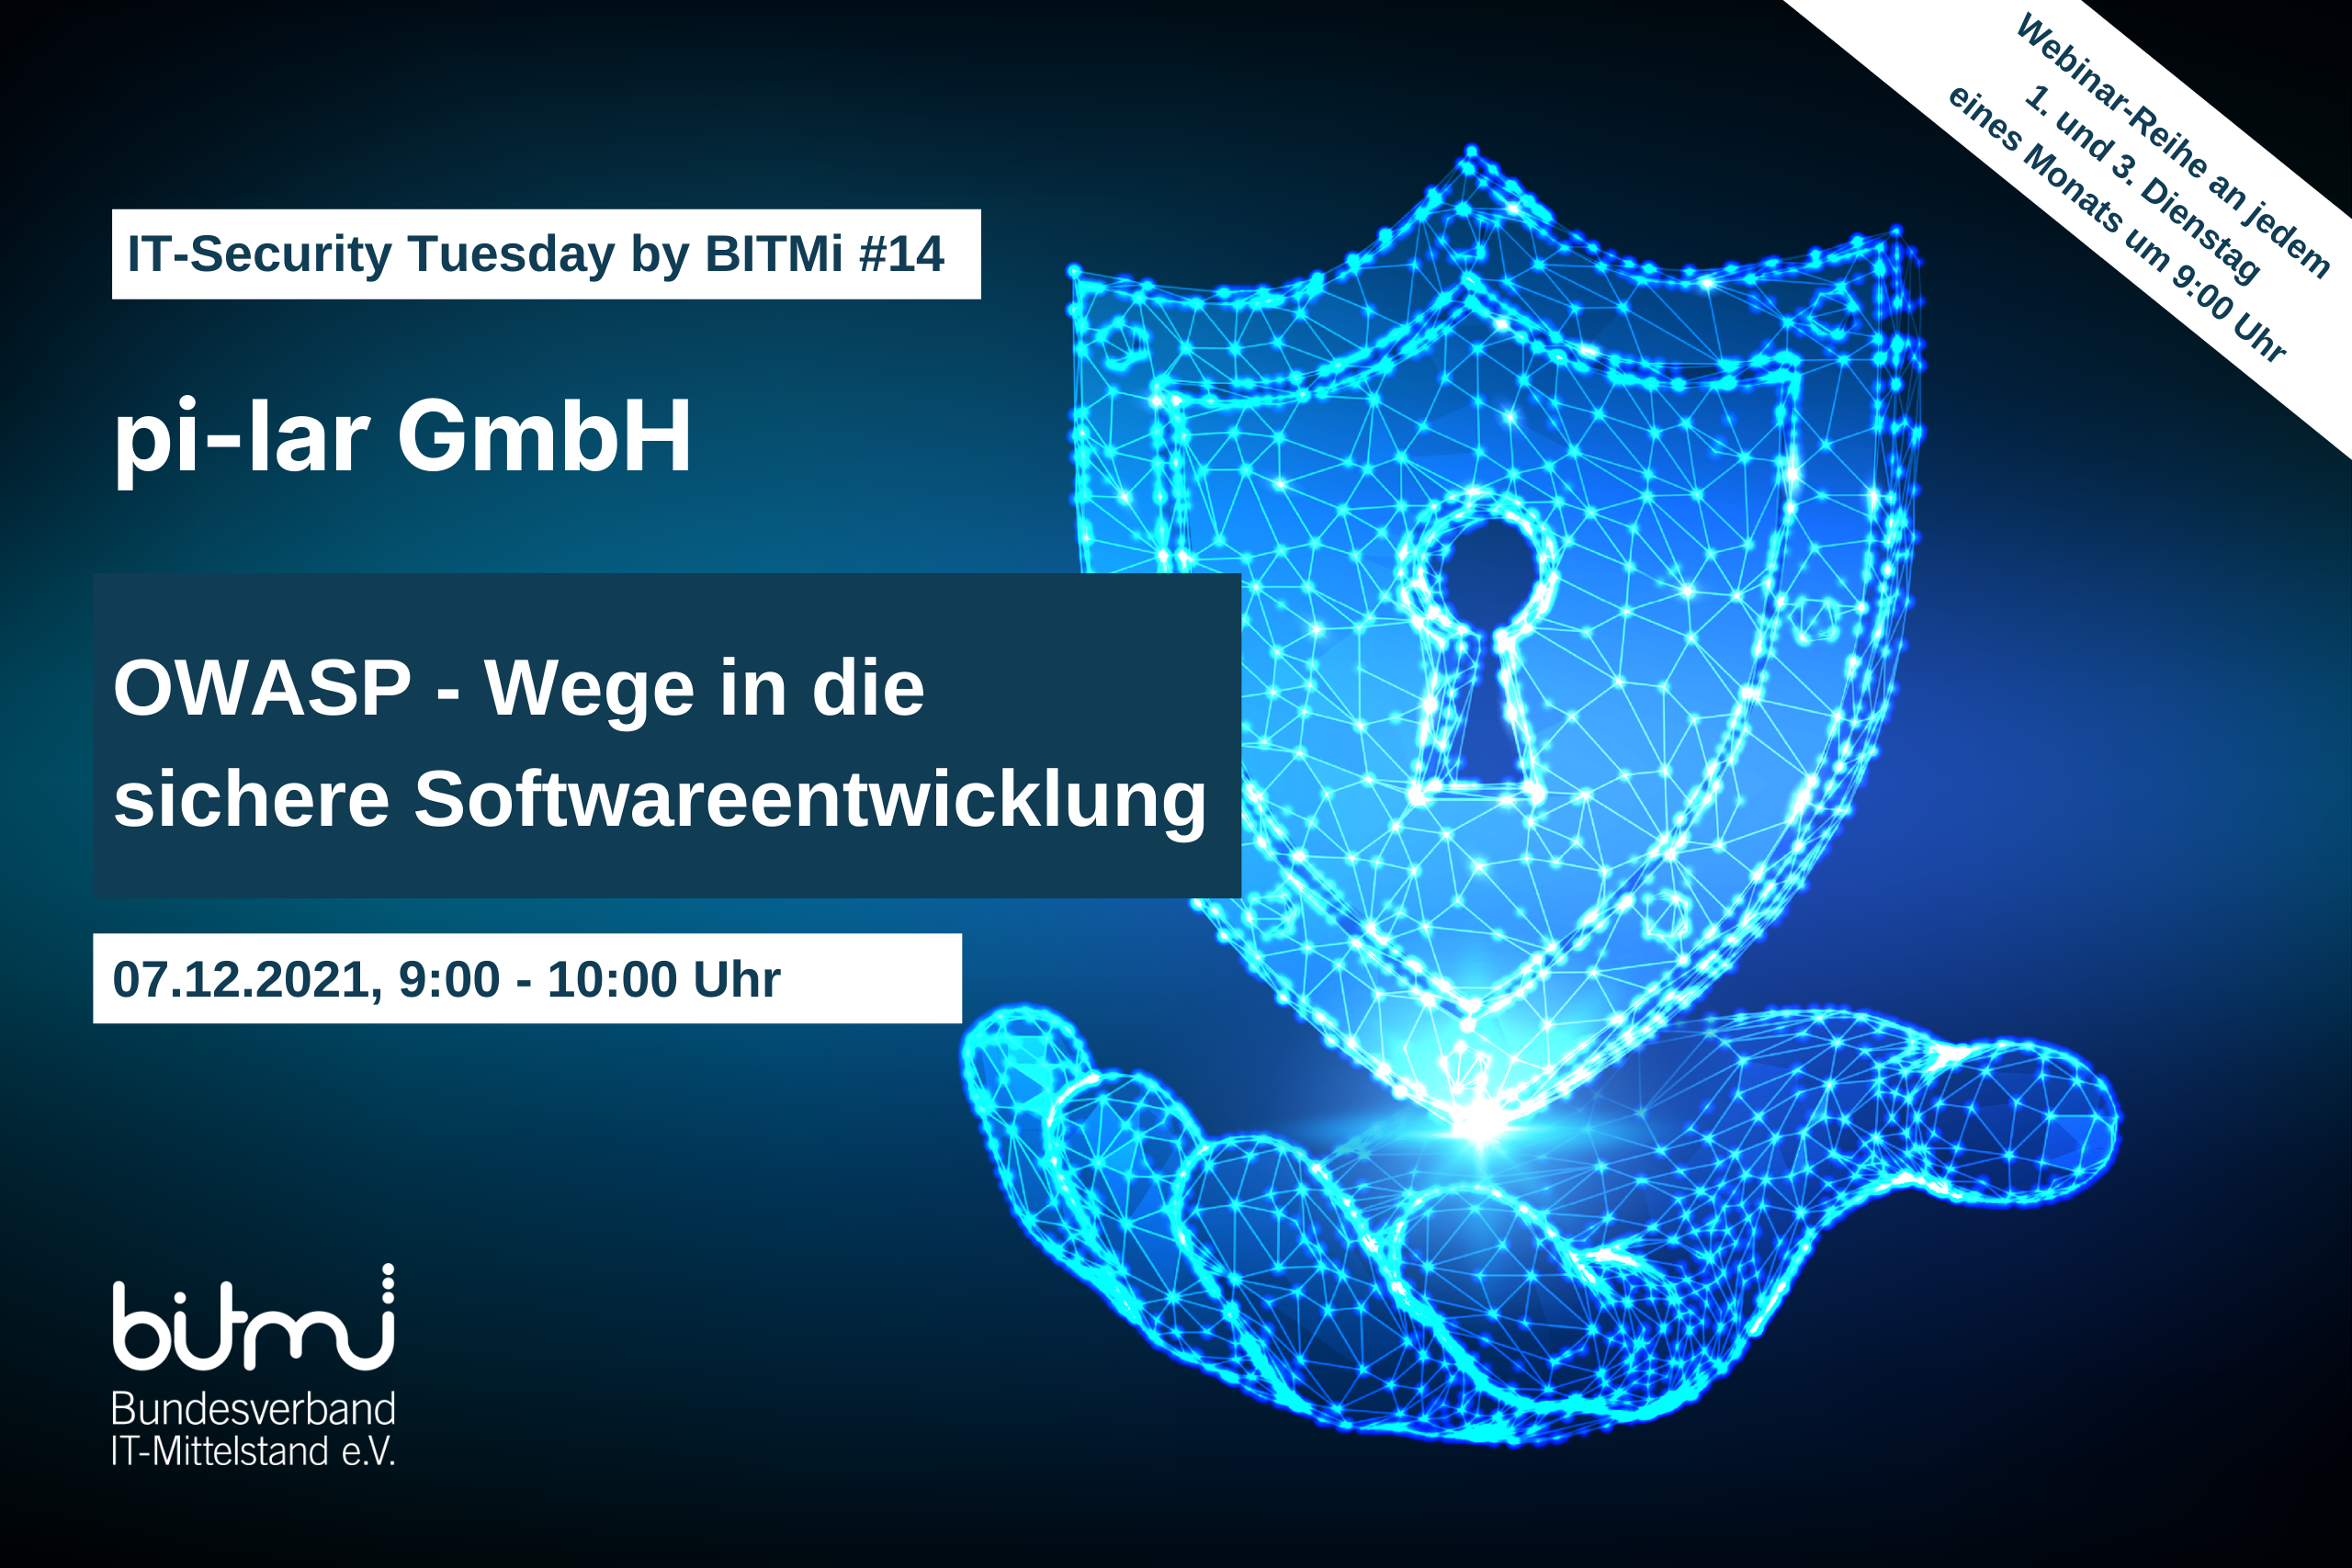 IT-Security Tuesday mit BITMi Mitglied pi-lar: OWASP - Wege in die sichere Softwareentwicklung